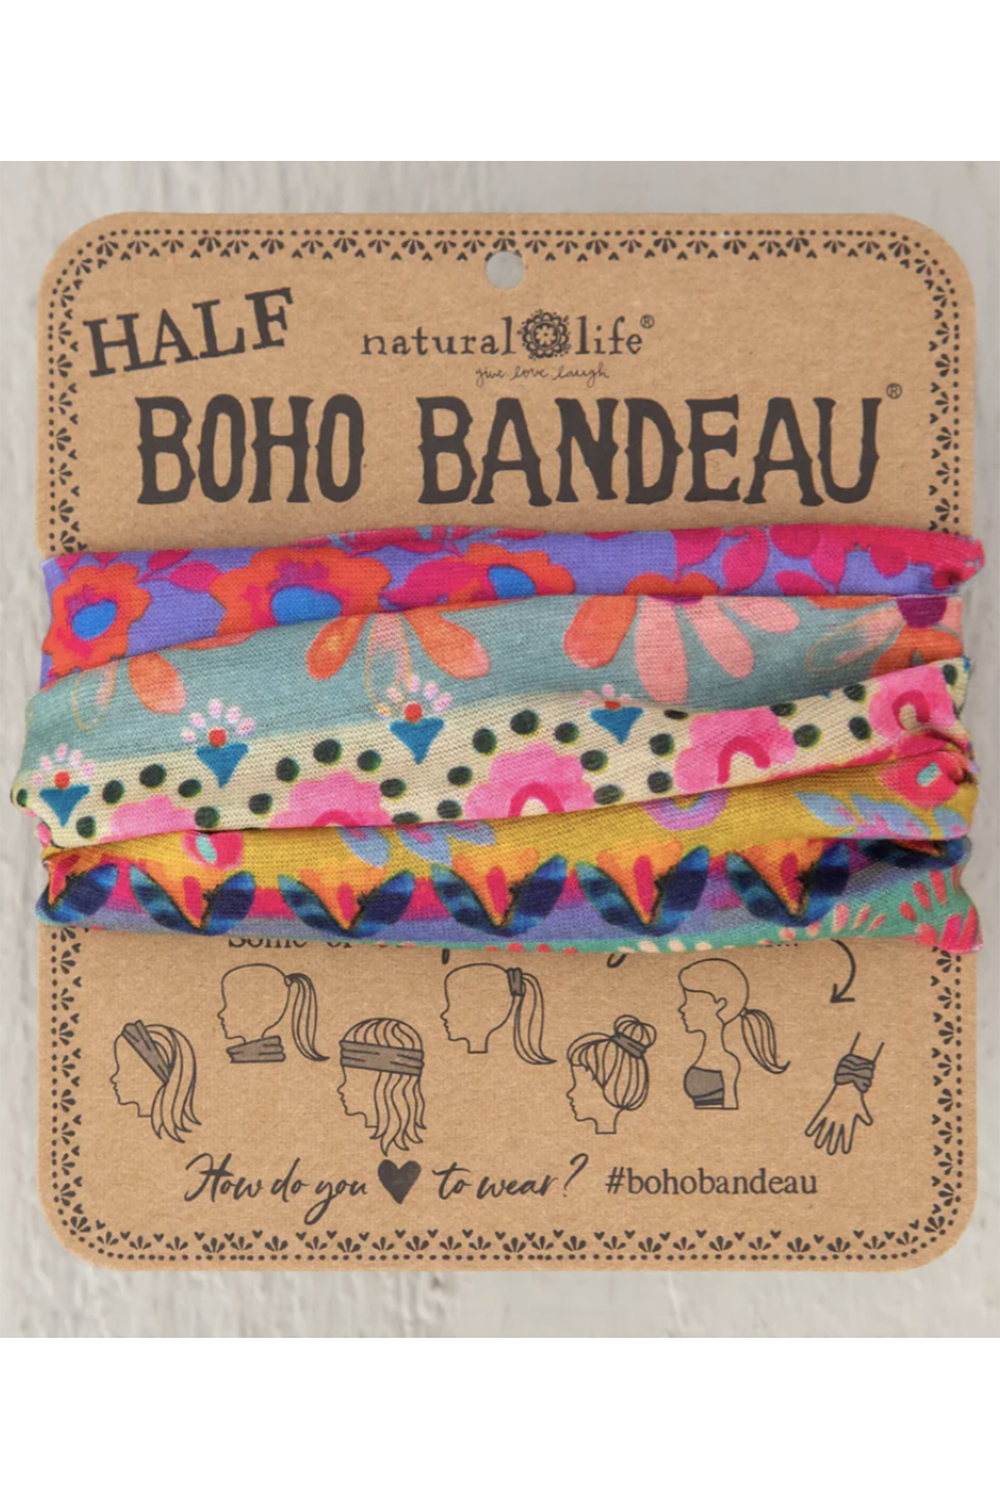 Half Boho Bandeau - Floral Border Pattern